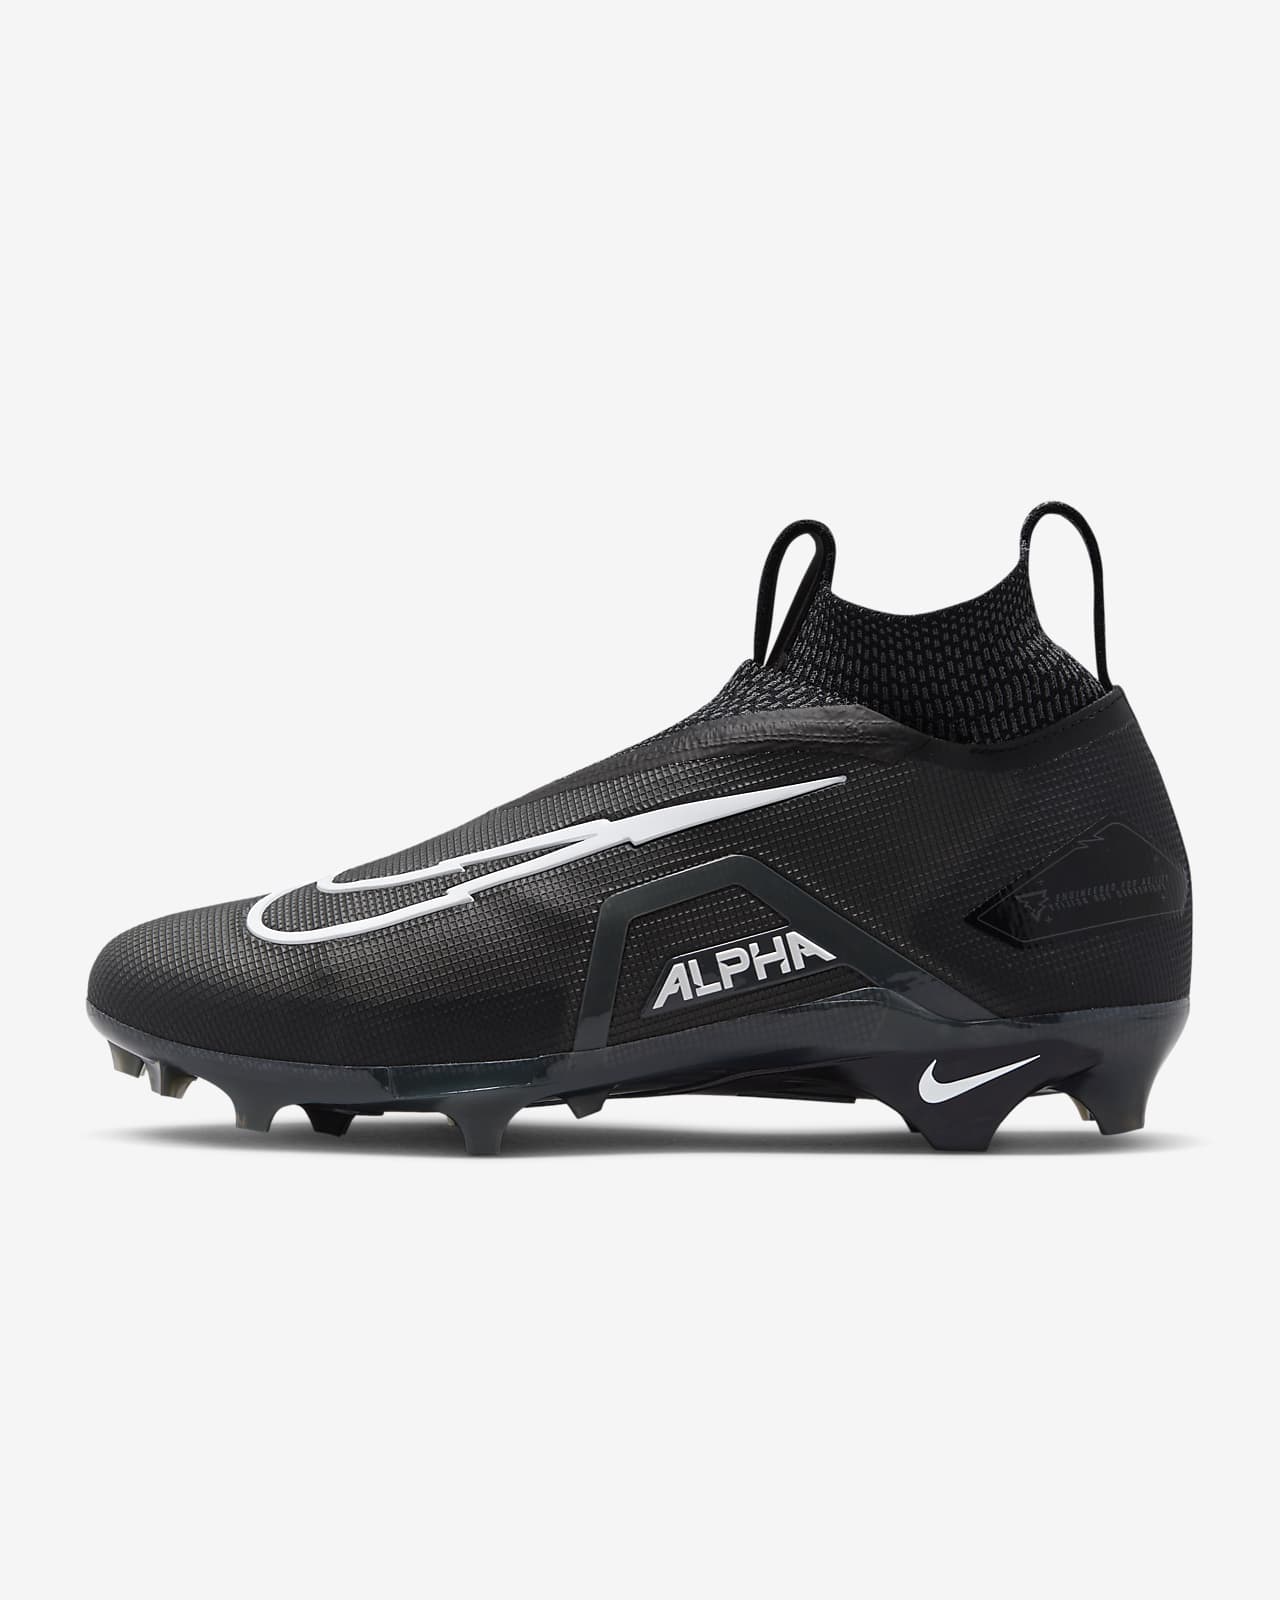 Calzado de fútbol americano Nike Alpha Menace 3 para hombre. Nike.com